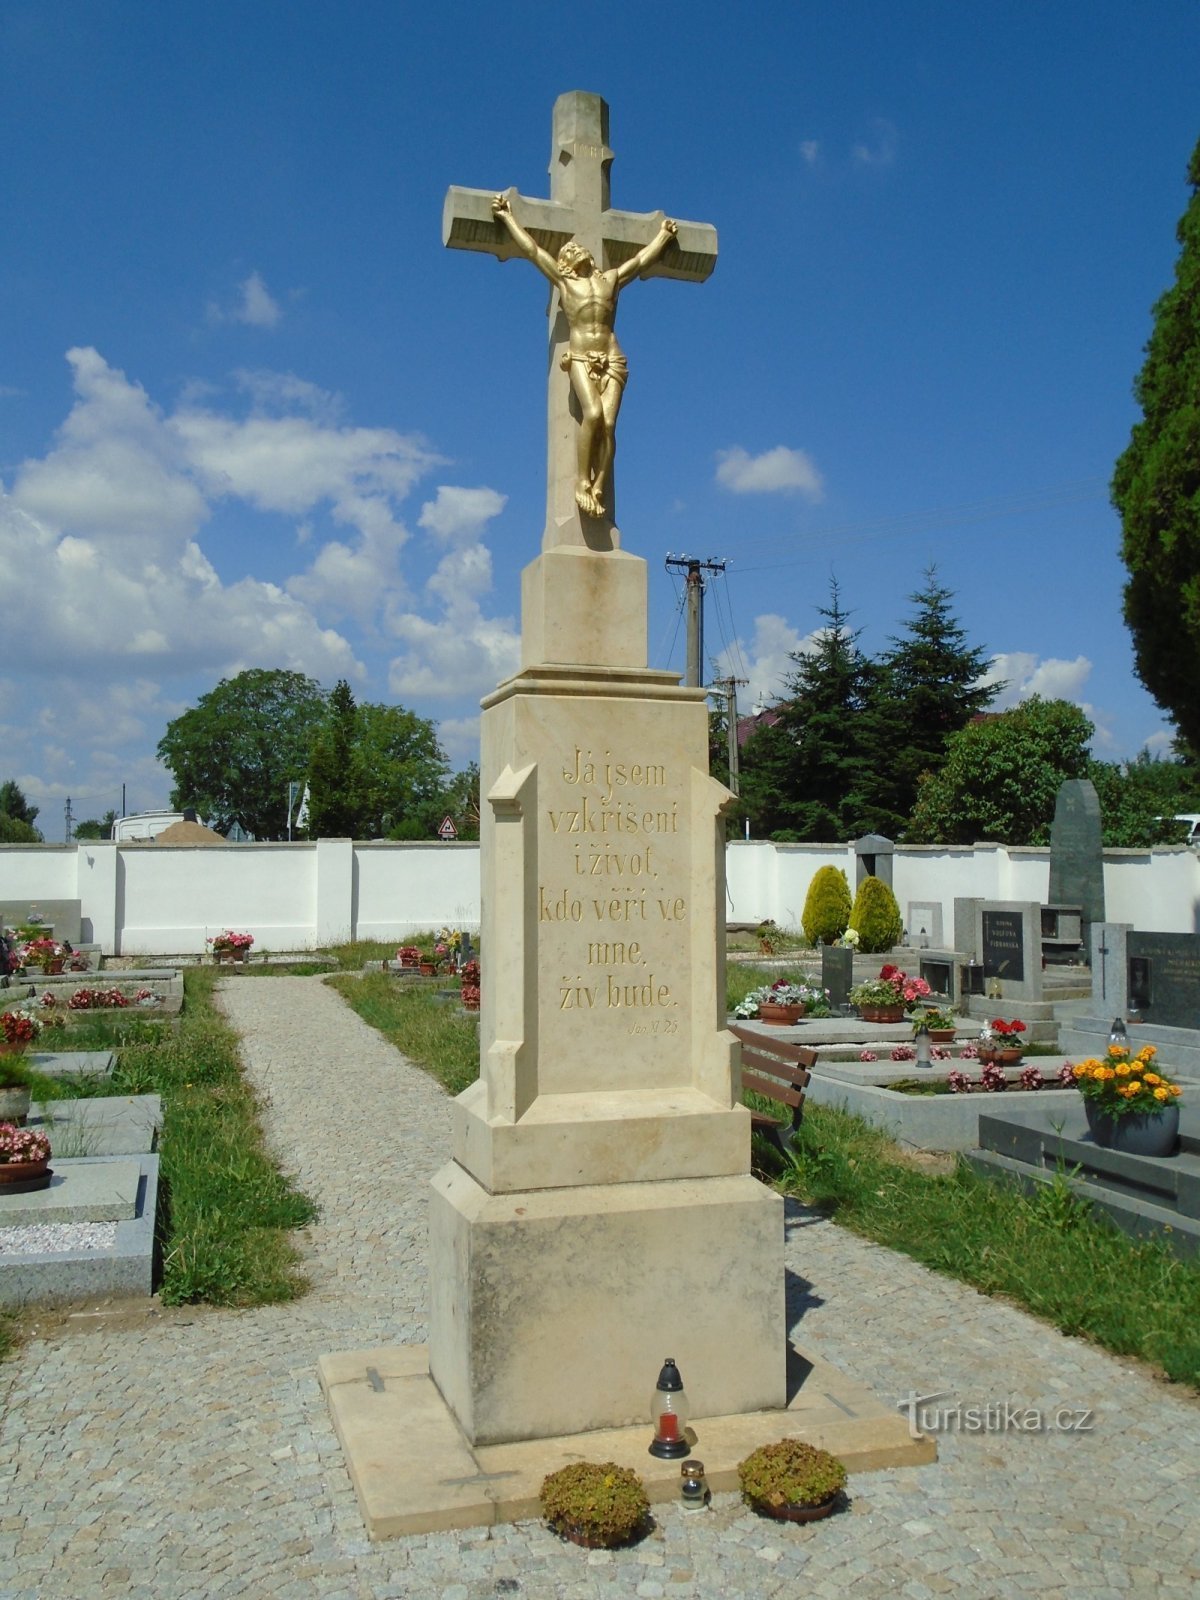 Friedhofskreuz (Heilige, 20.6.2018)